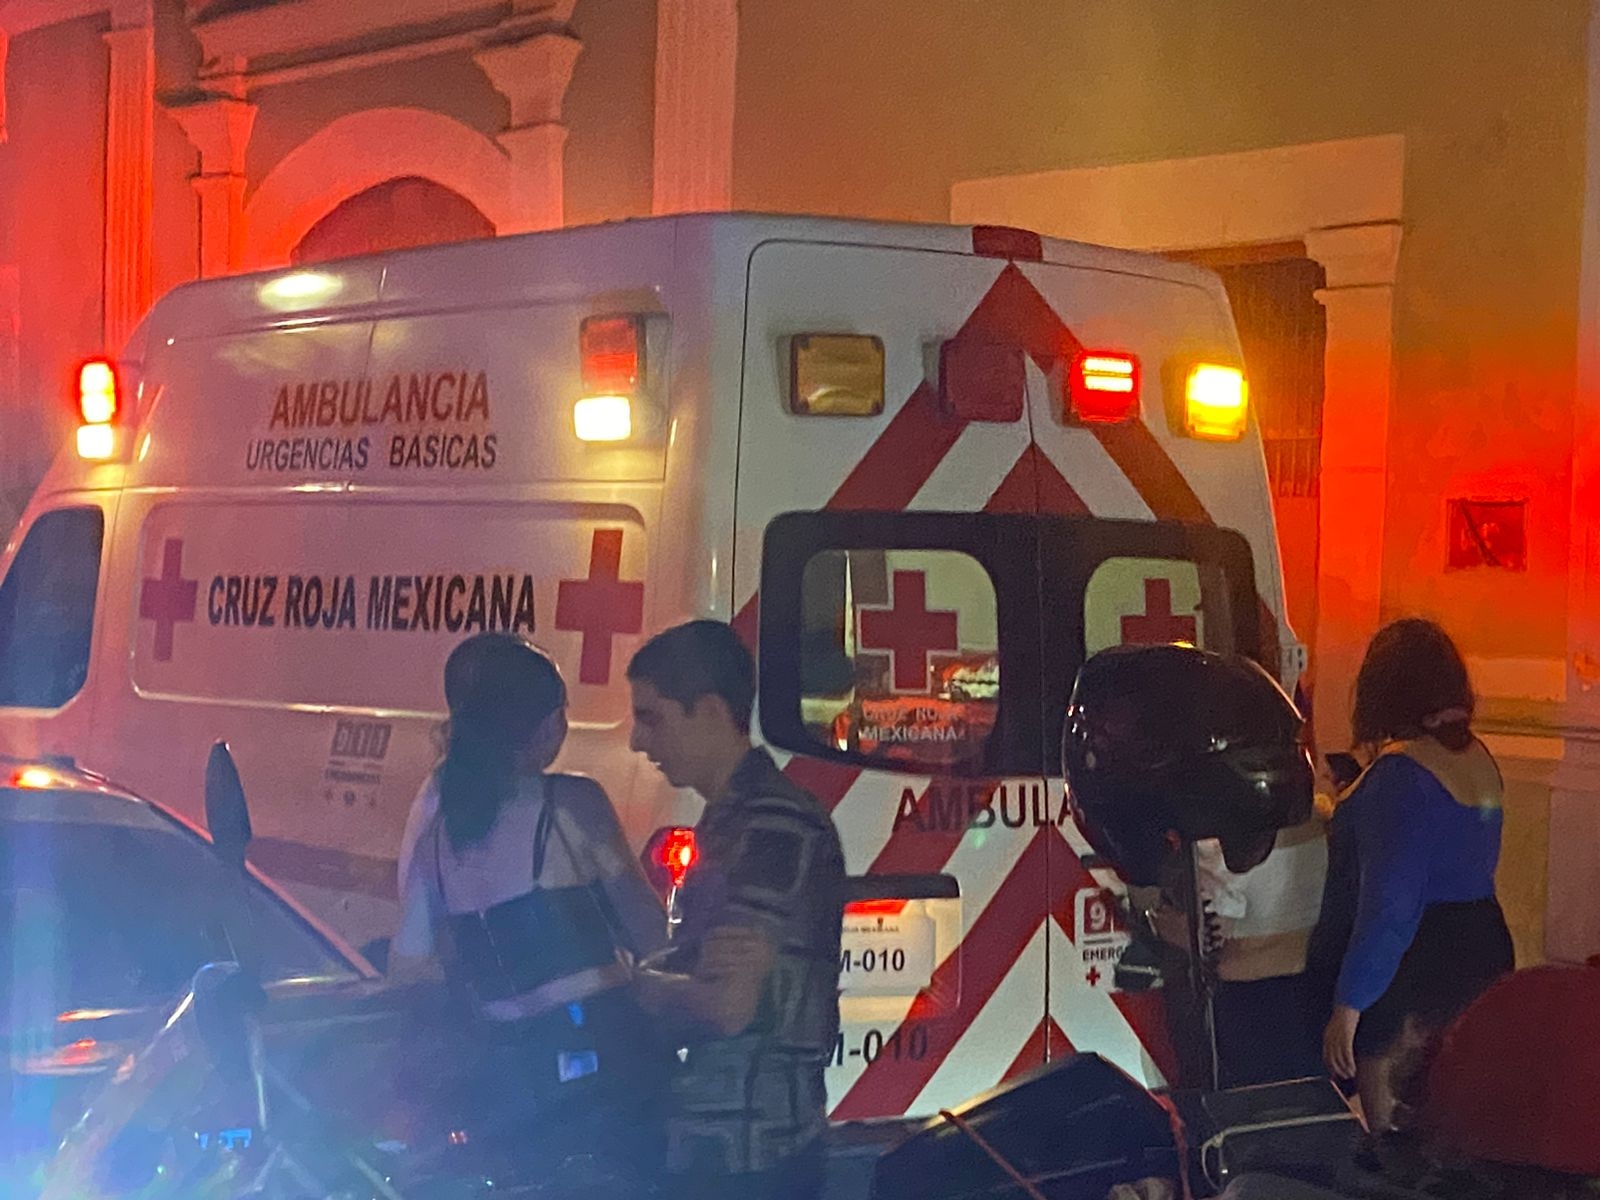 Riña entre hermanas ebrias deja saldo de una mujer hospitalizada en Campeche